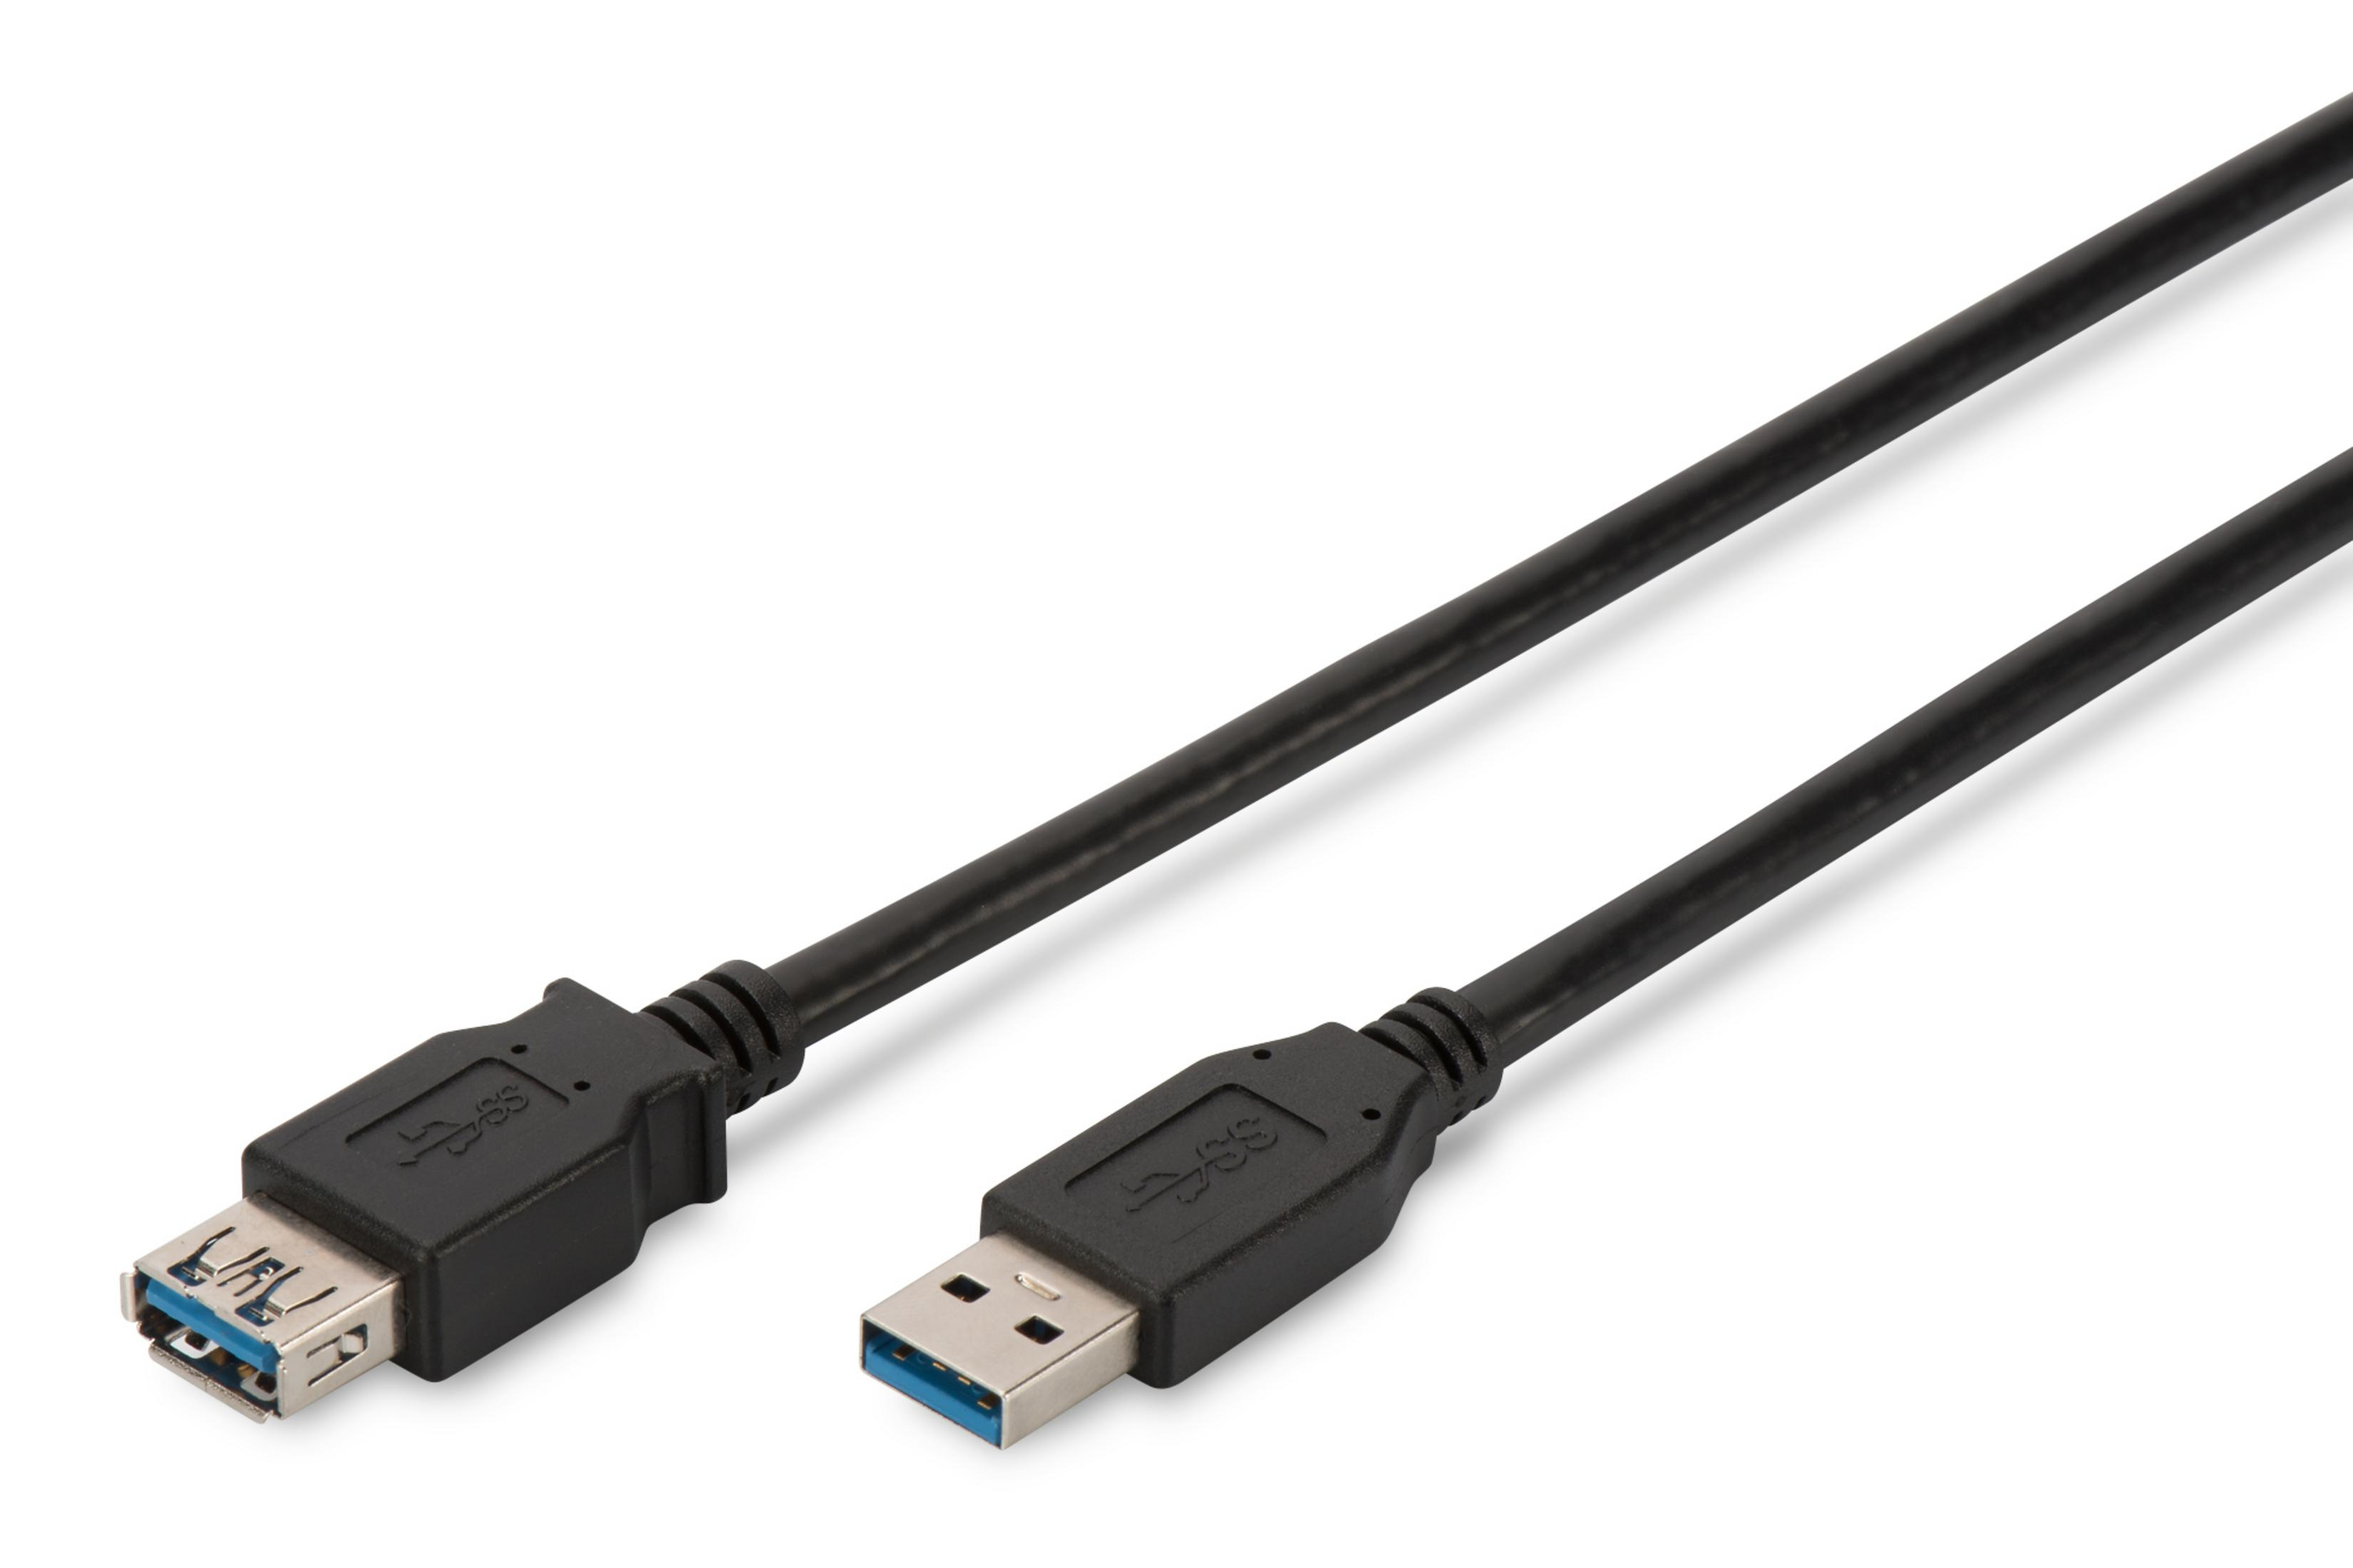 DIGITUS 1,8M USB-Kabel USB VERLÄNGERUNG 3.0 SCHWARZ DK-300203-018-S